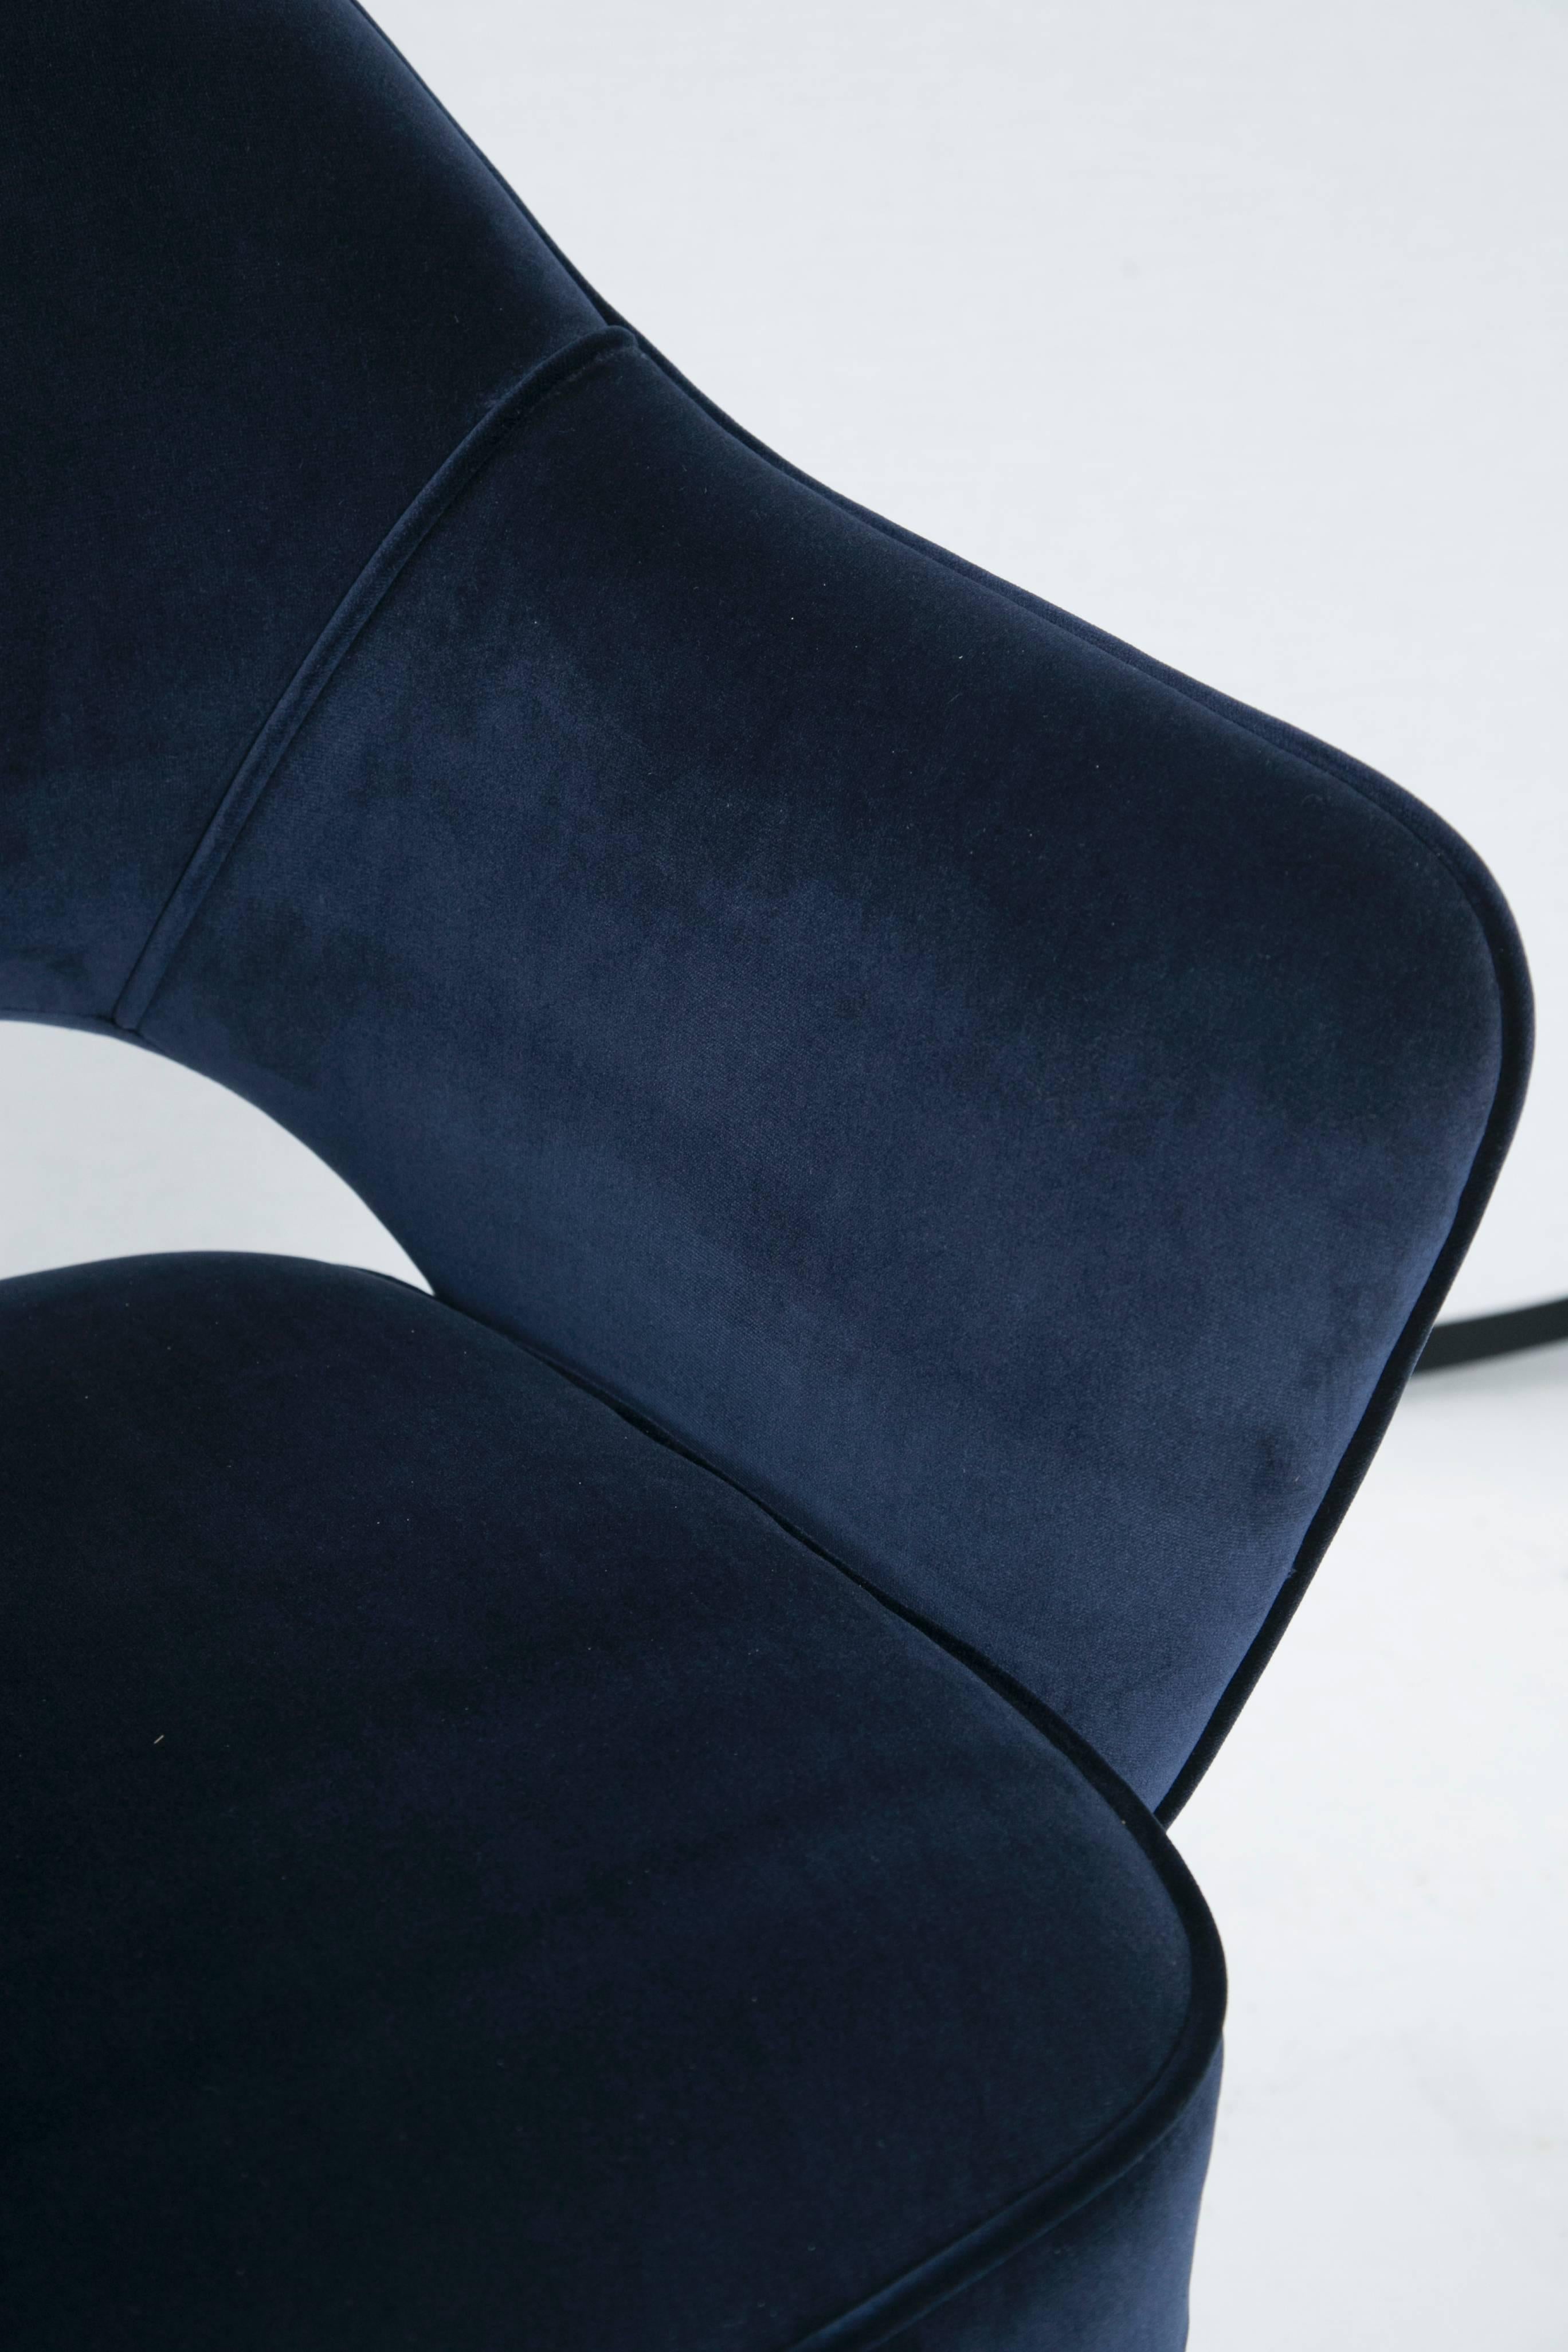 Late 20th Century Saarinen for Knoll Executive Arm Chairs in Navy Velvet, Chrome Tubular Legs For Sale